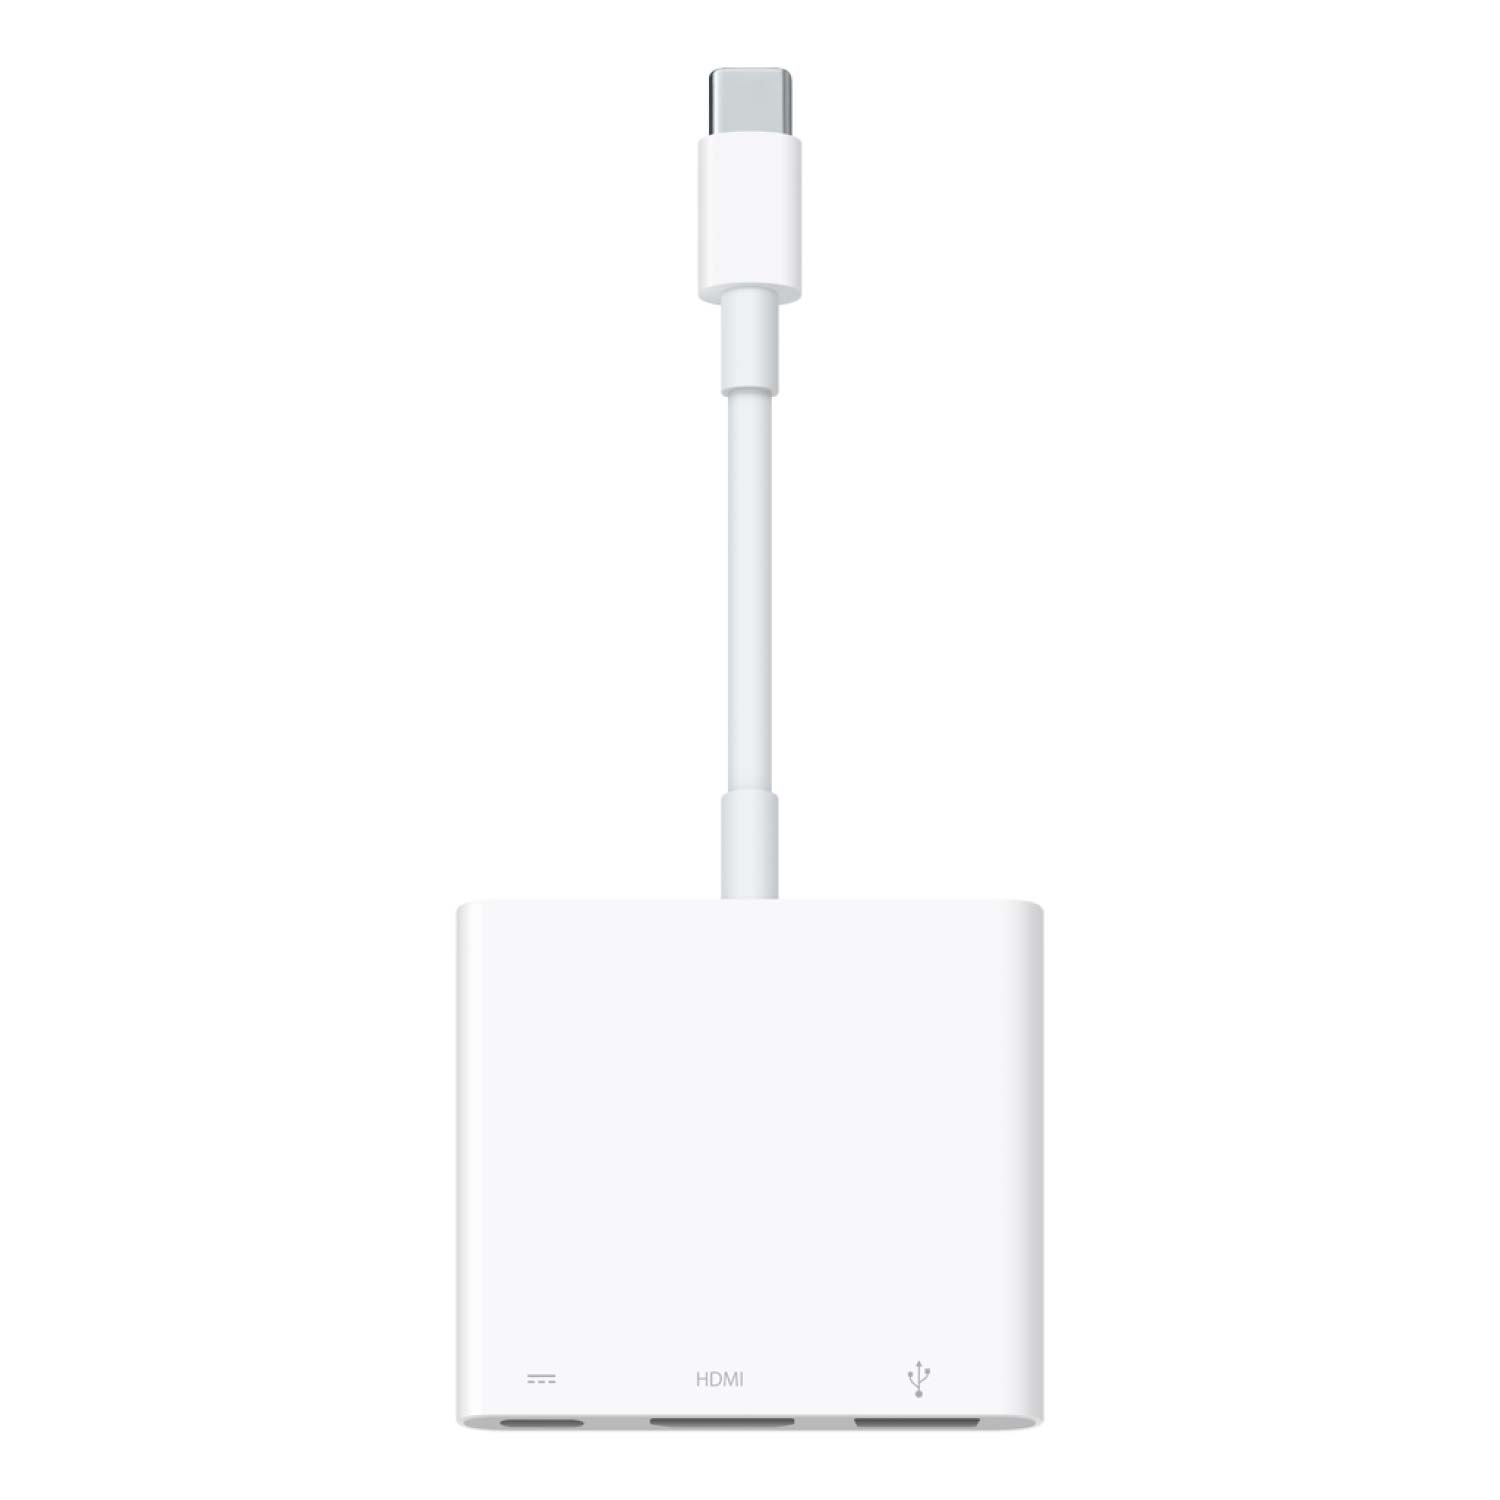 Apple USB-C Digital-AV Multiport Adapter